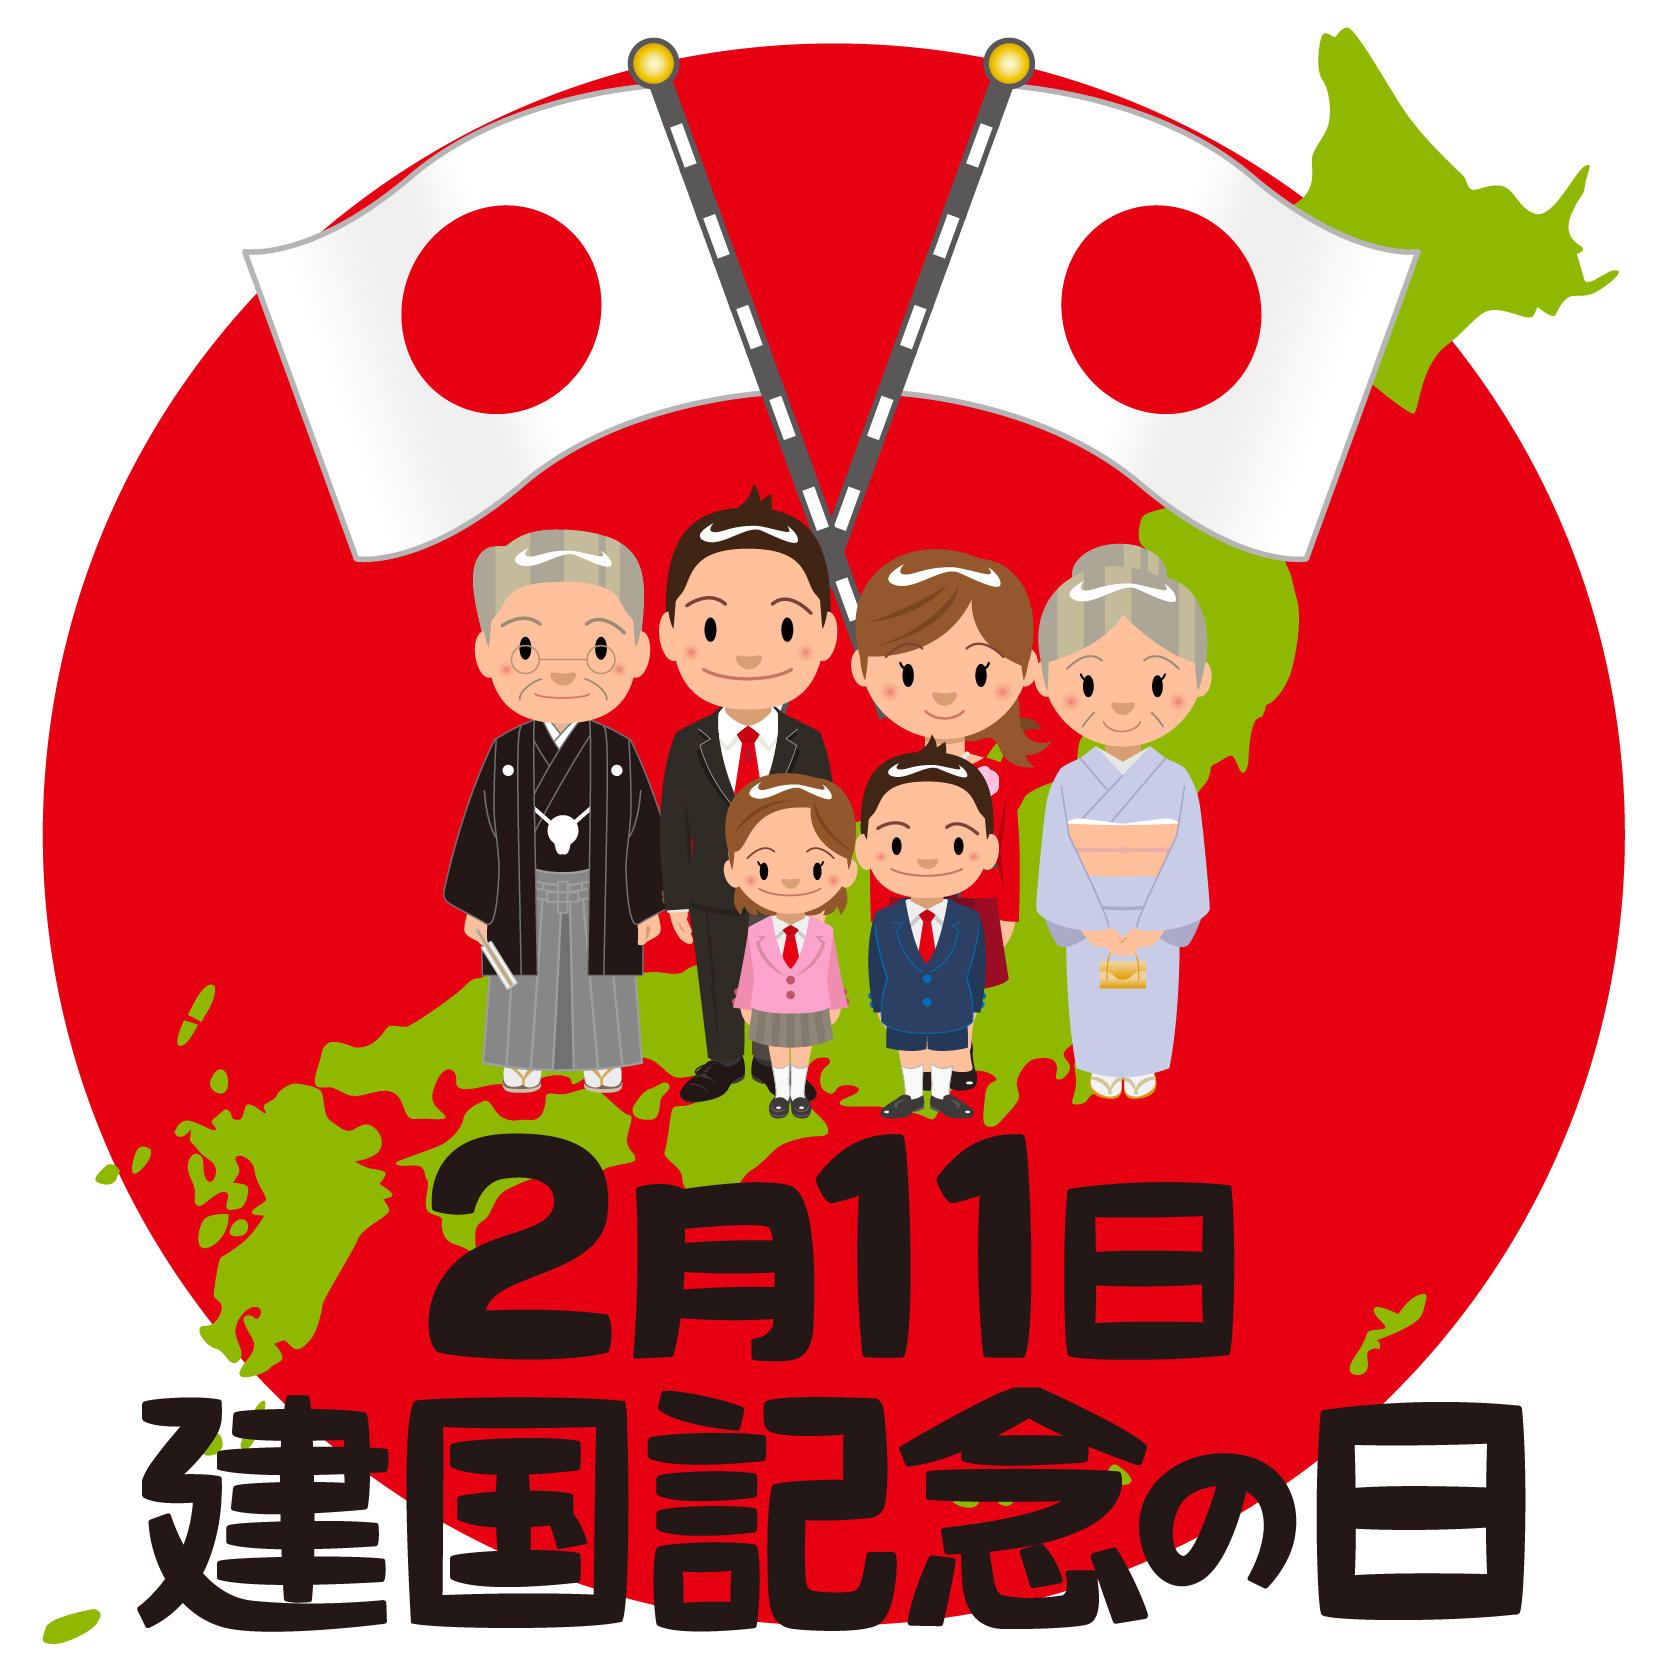 商用フリー 無料イラスト 建国記念日 Japan National Foundation Day028 商用ok フリー素材集 ナイスなイラスト